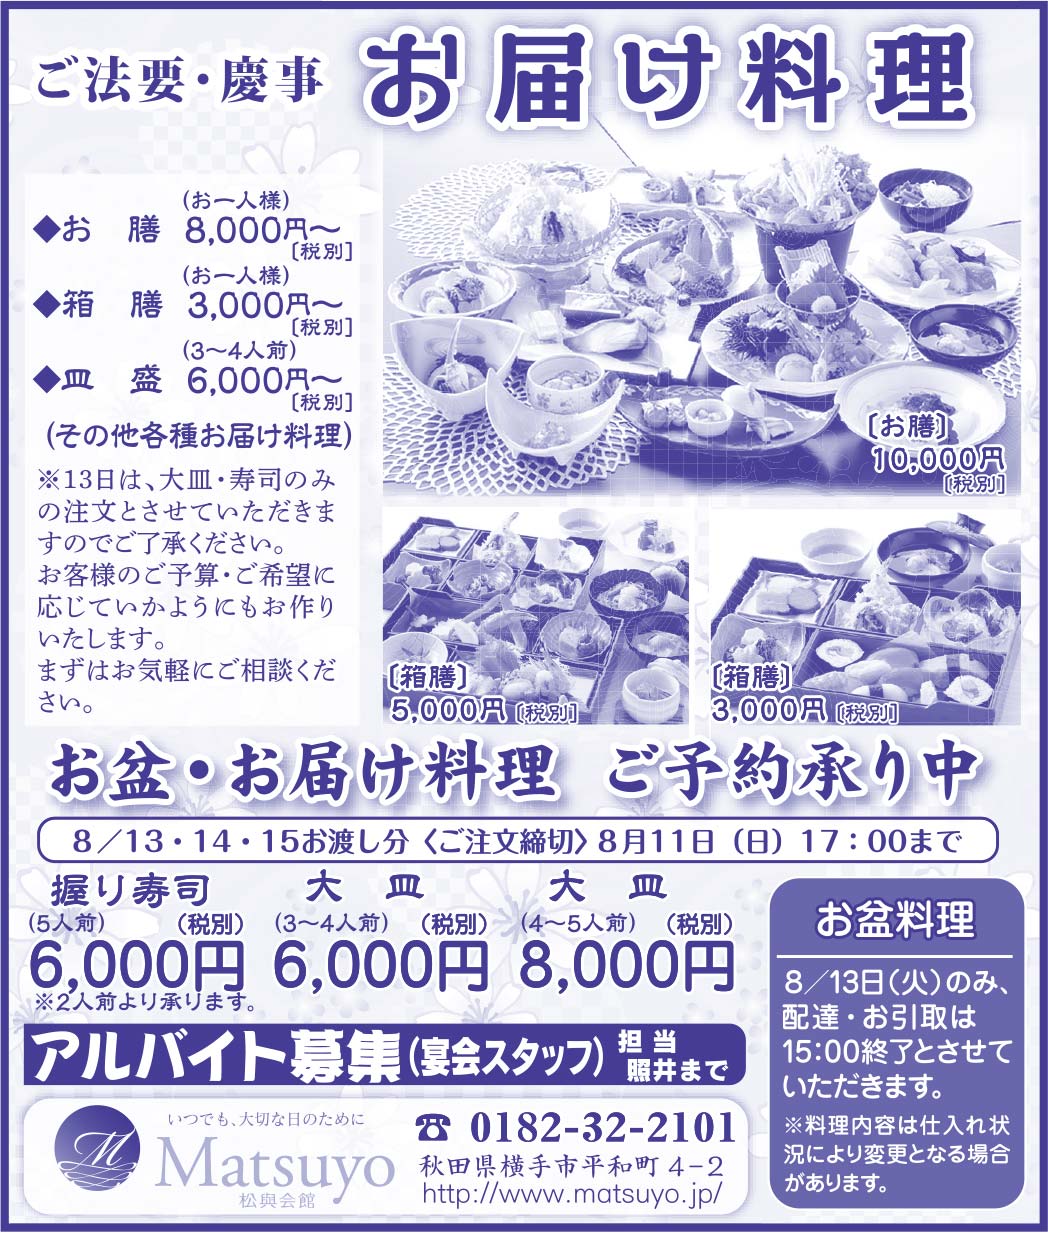 松興会館様の2021新春号広告